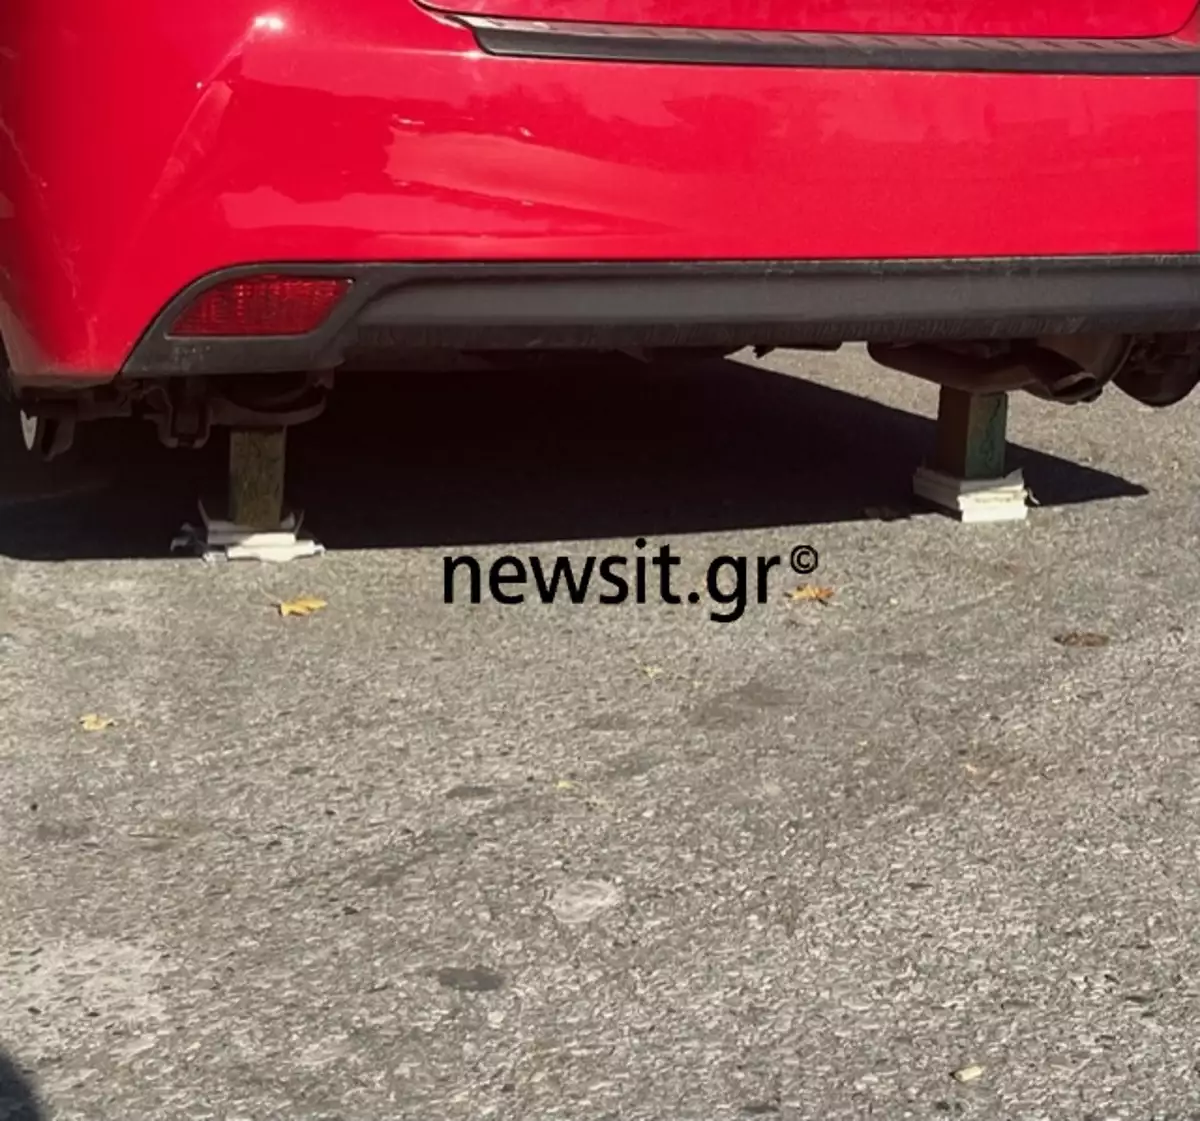 Θεσσαλονίκη: Νεαρός πήγε να πάρει το αυτοκίνητο του και έλειπαν και οι τέσσερις ρόδες (φωτο)